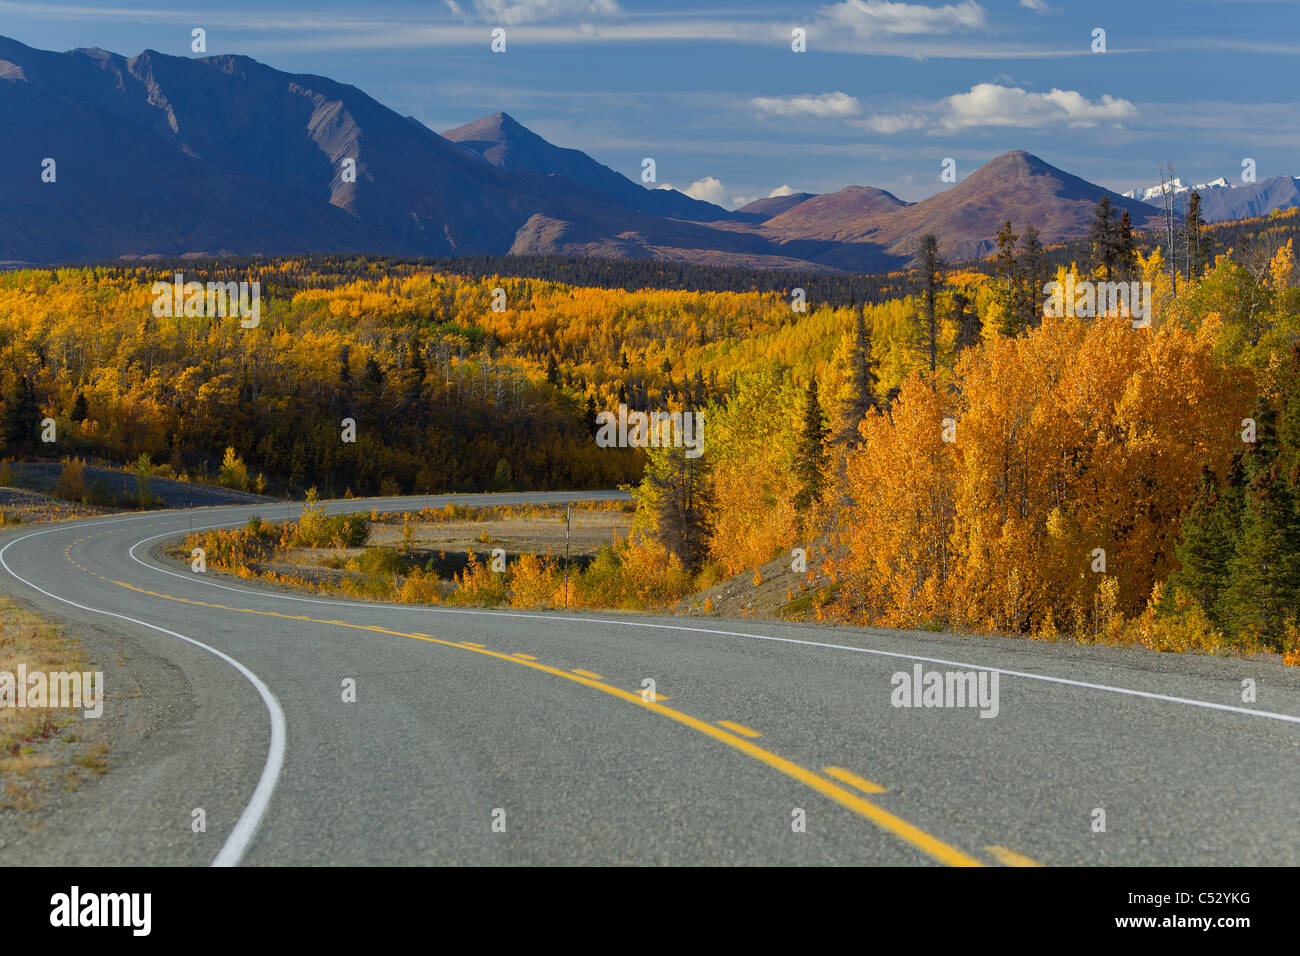 Herrliche Sicht auf den Alaska Highway zwischen Haines, Alaska und Haines Junction, Yukon Territorium, Kanada, Herbst Stockfoto